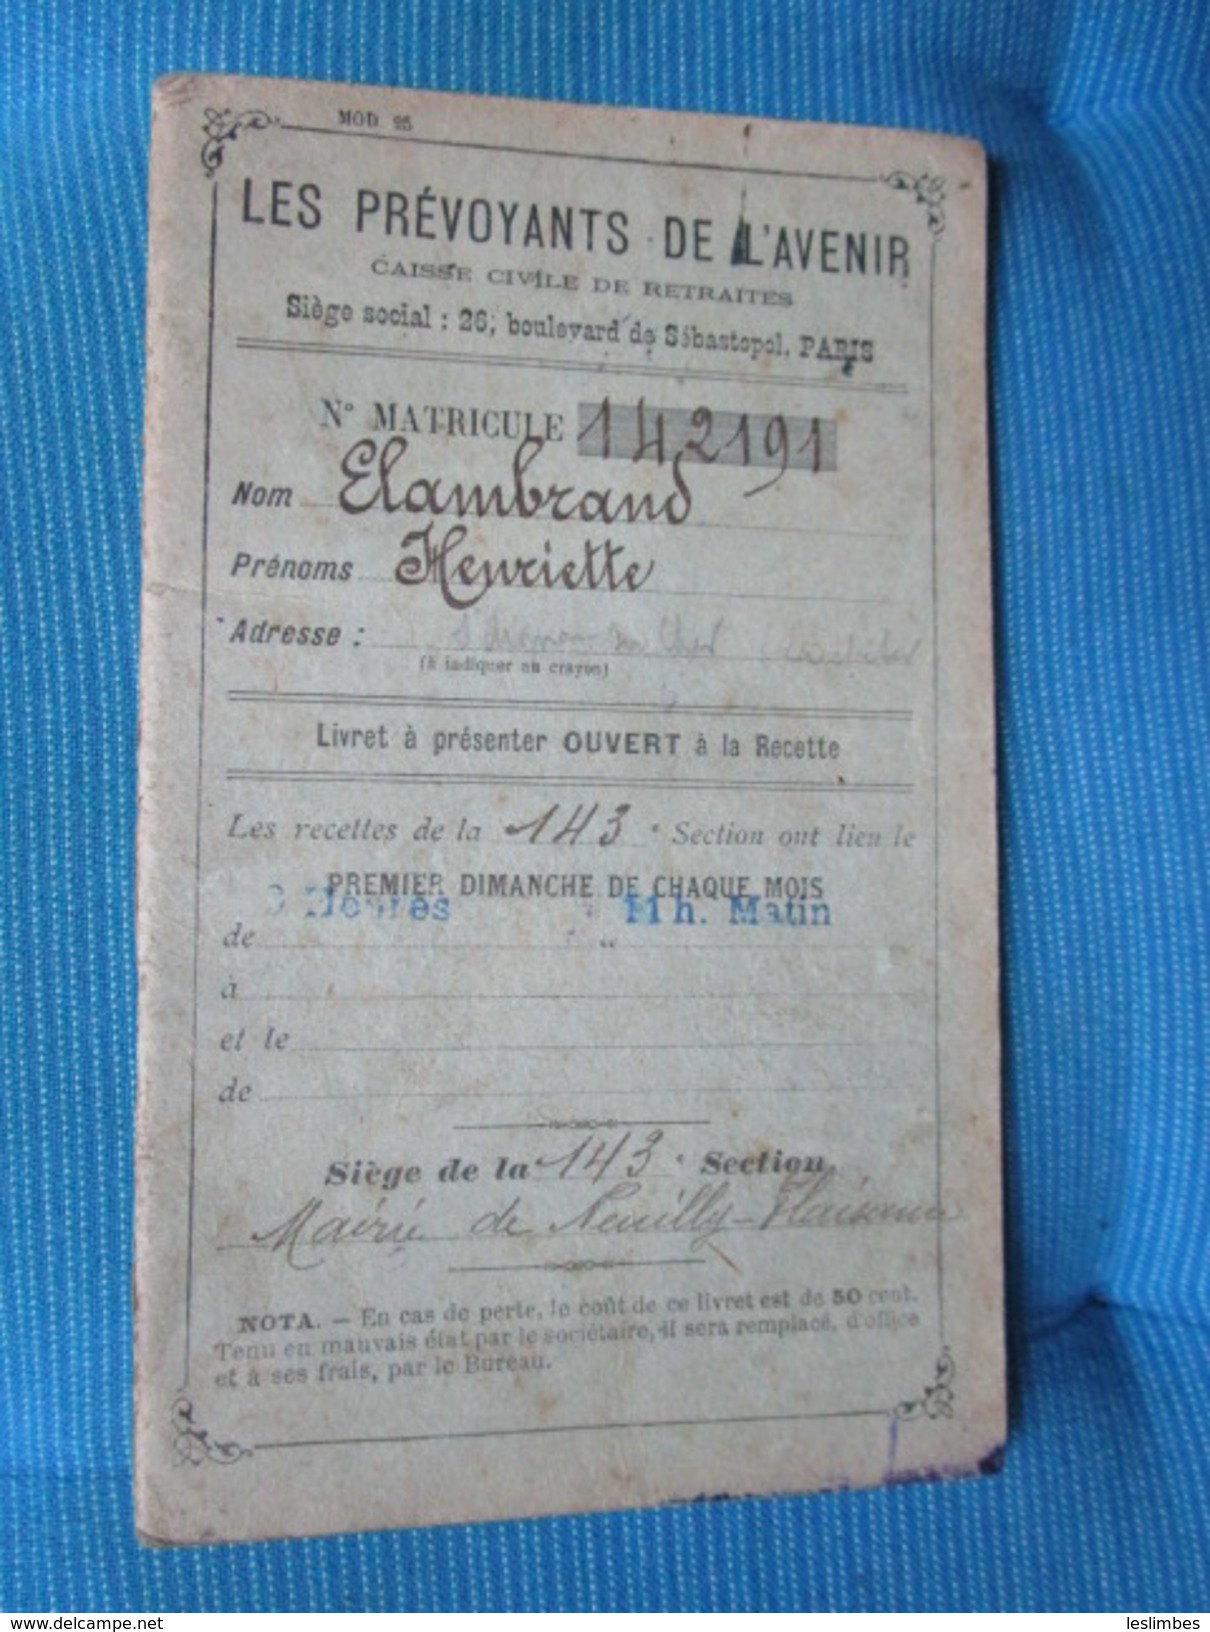 Les Prevoyants De L'Avenir. Caisse Civile De Retraites. Livret A Presenter Ouvert A La Recette. No. Matricule 142.191 - Décrets & Lois